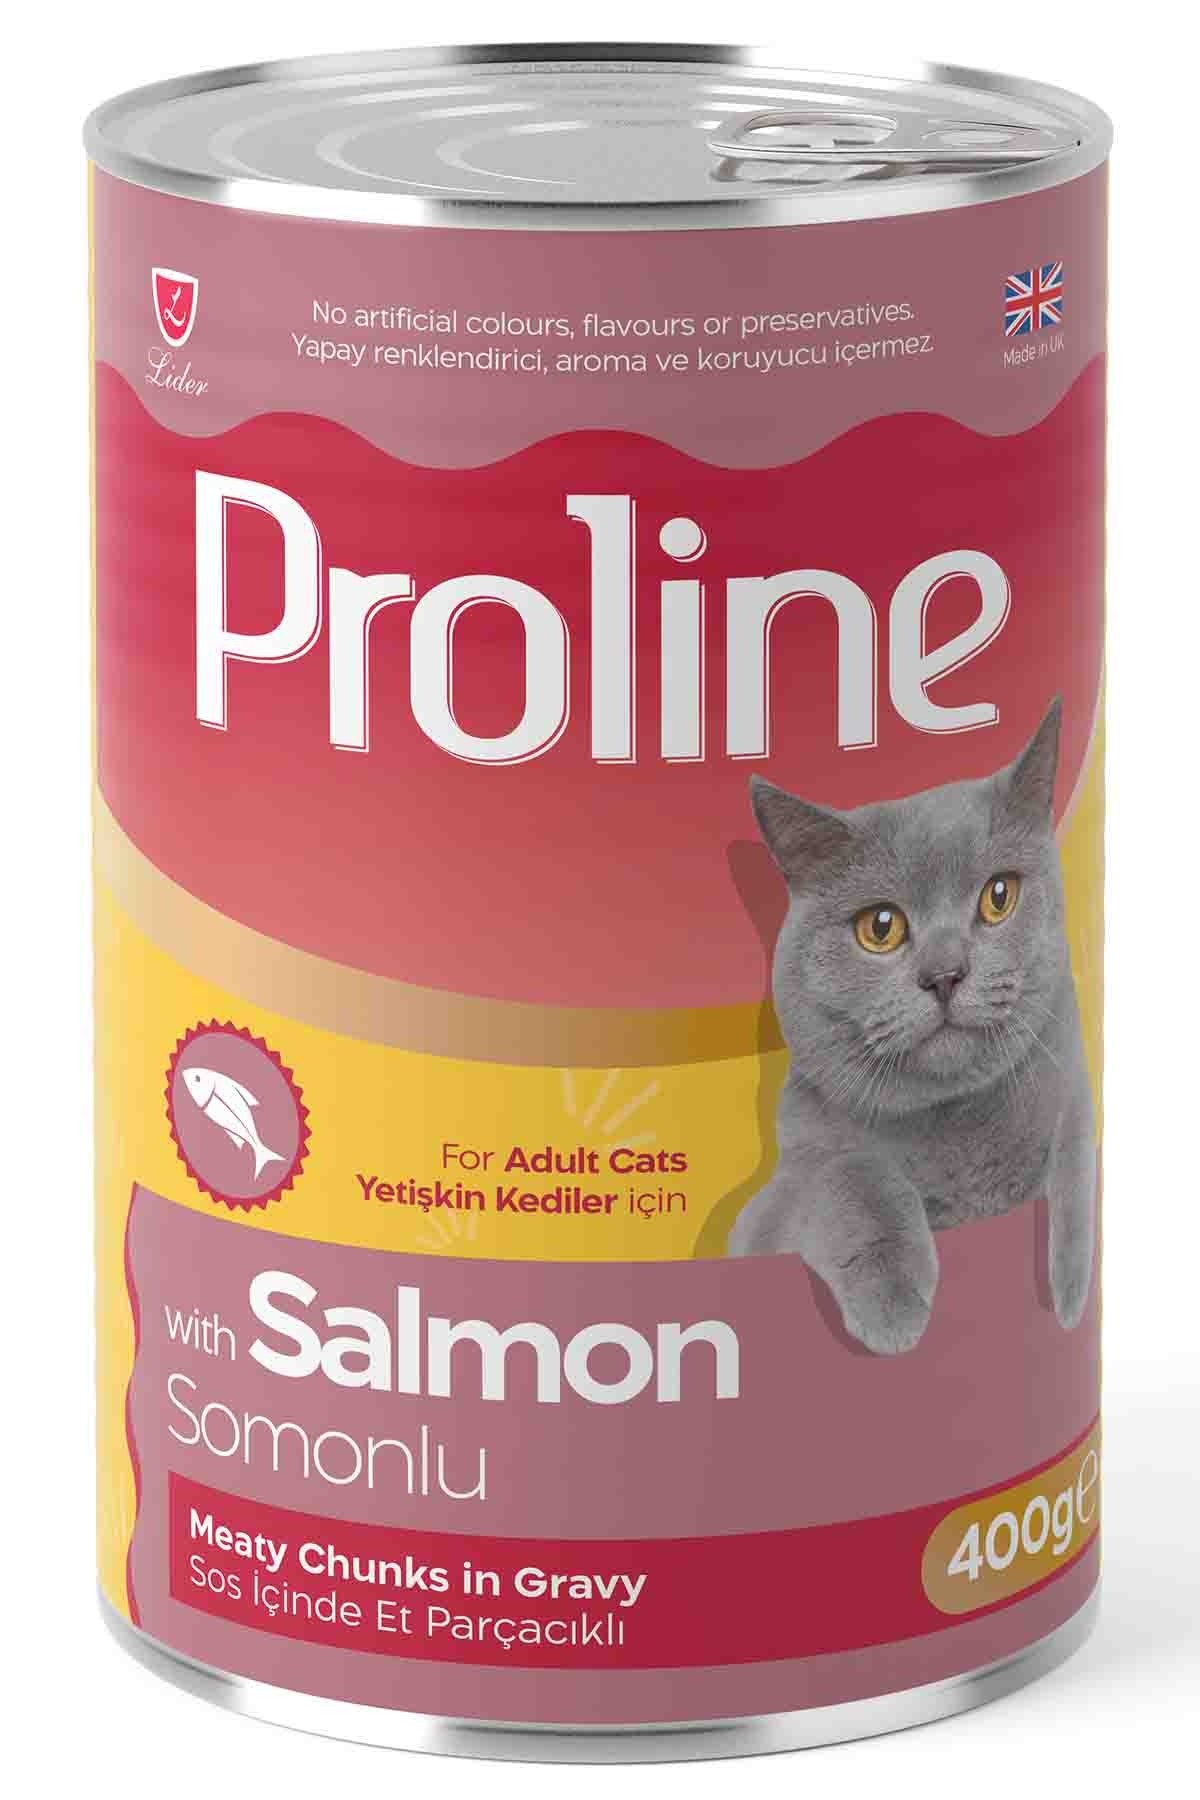 Proline Sos İçinde Et Parçacıklı Somonlu Yetişkin Kedi Konservesi 400 Gr